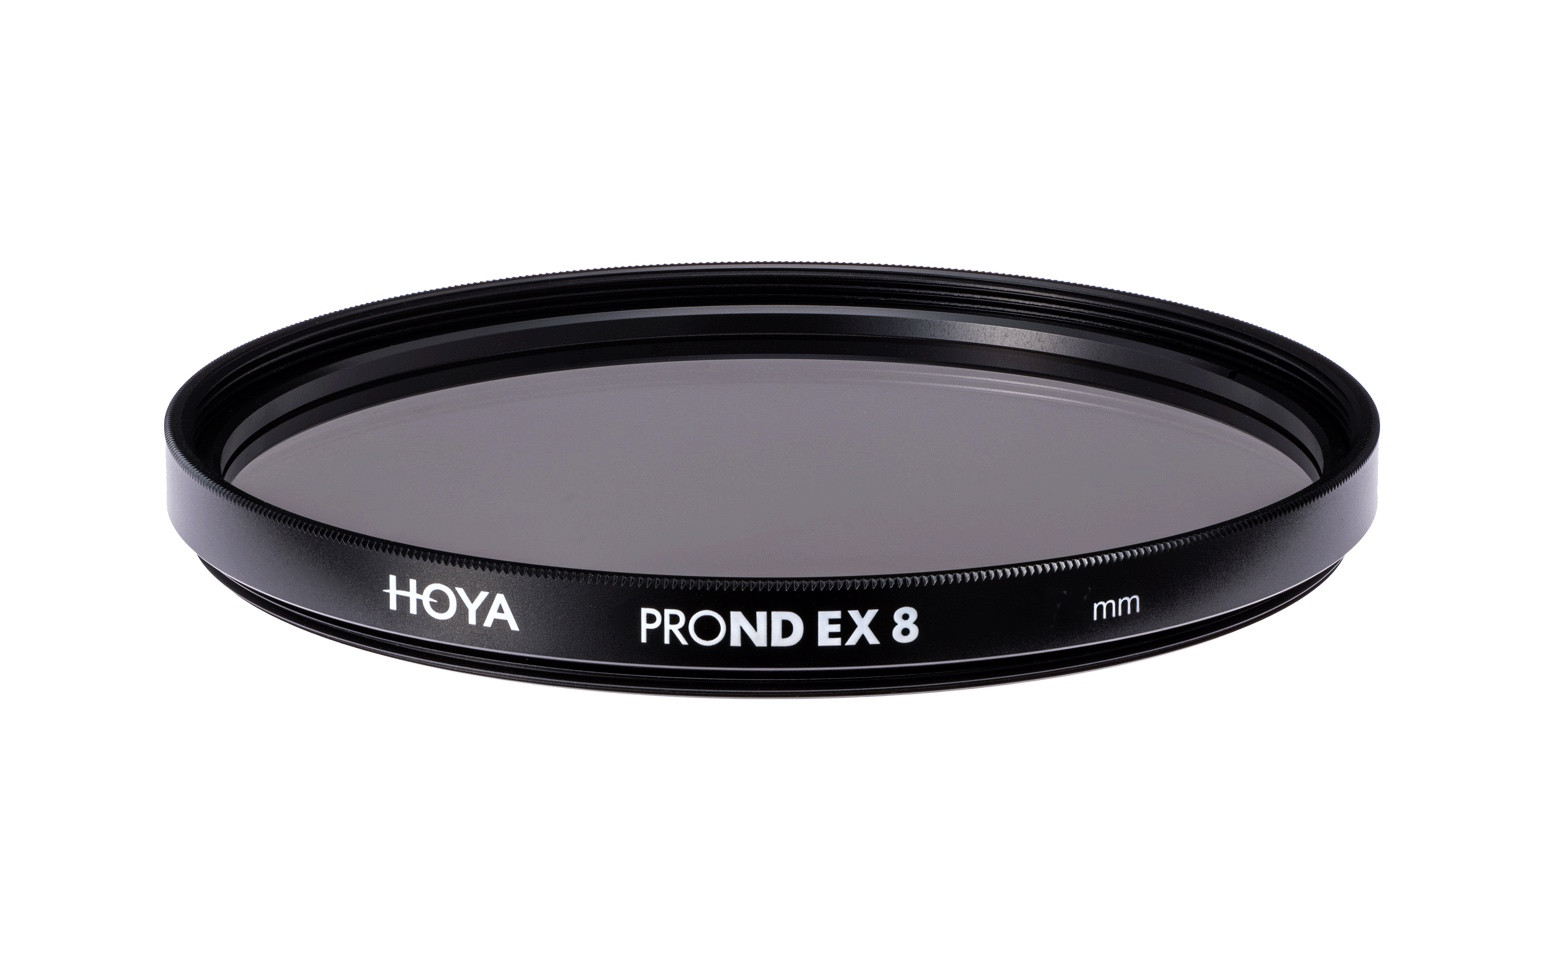 Фильтр нейтрально-серый HOYA PROND EX 8 (3 стопа) 58 мм